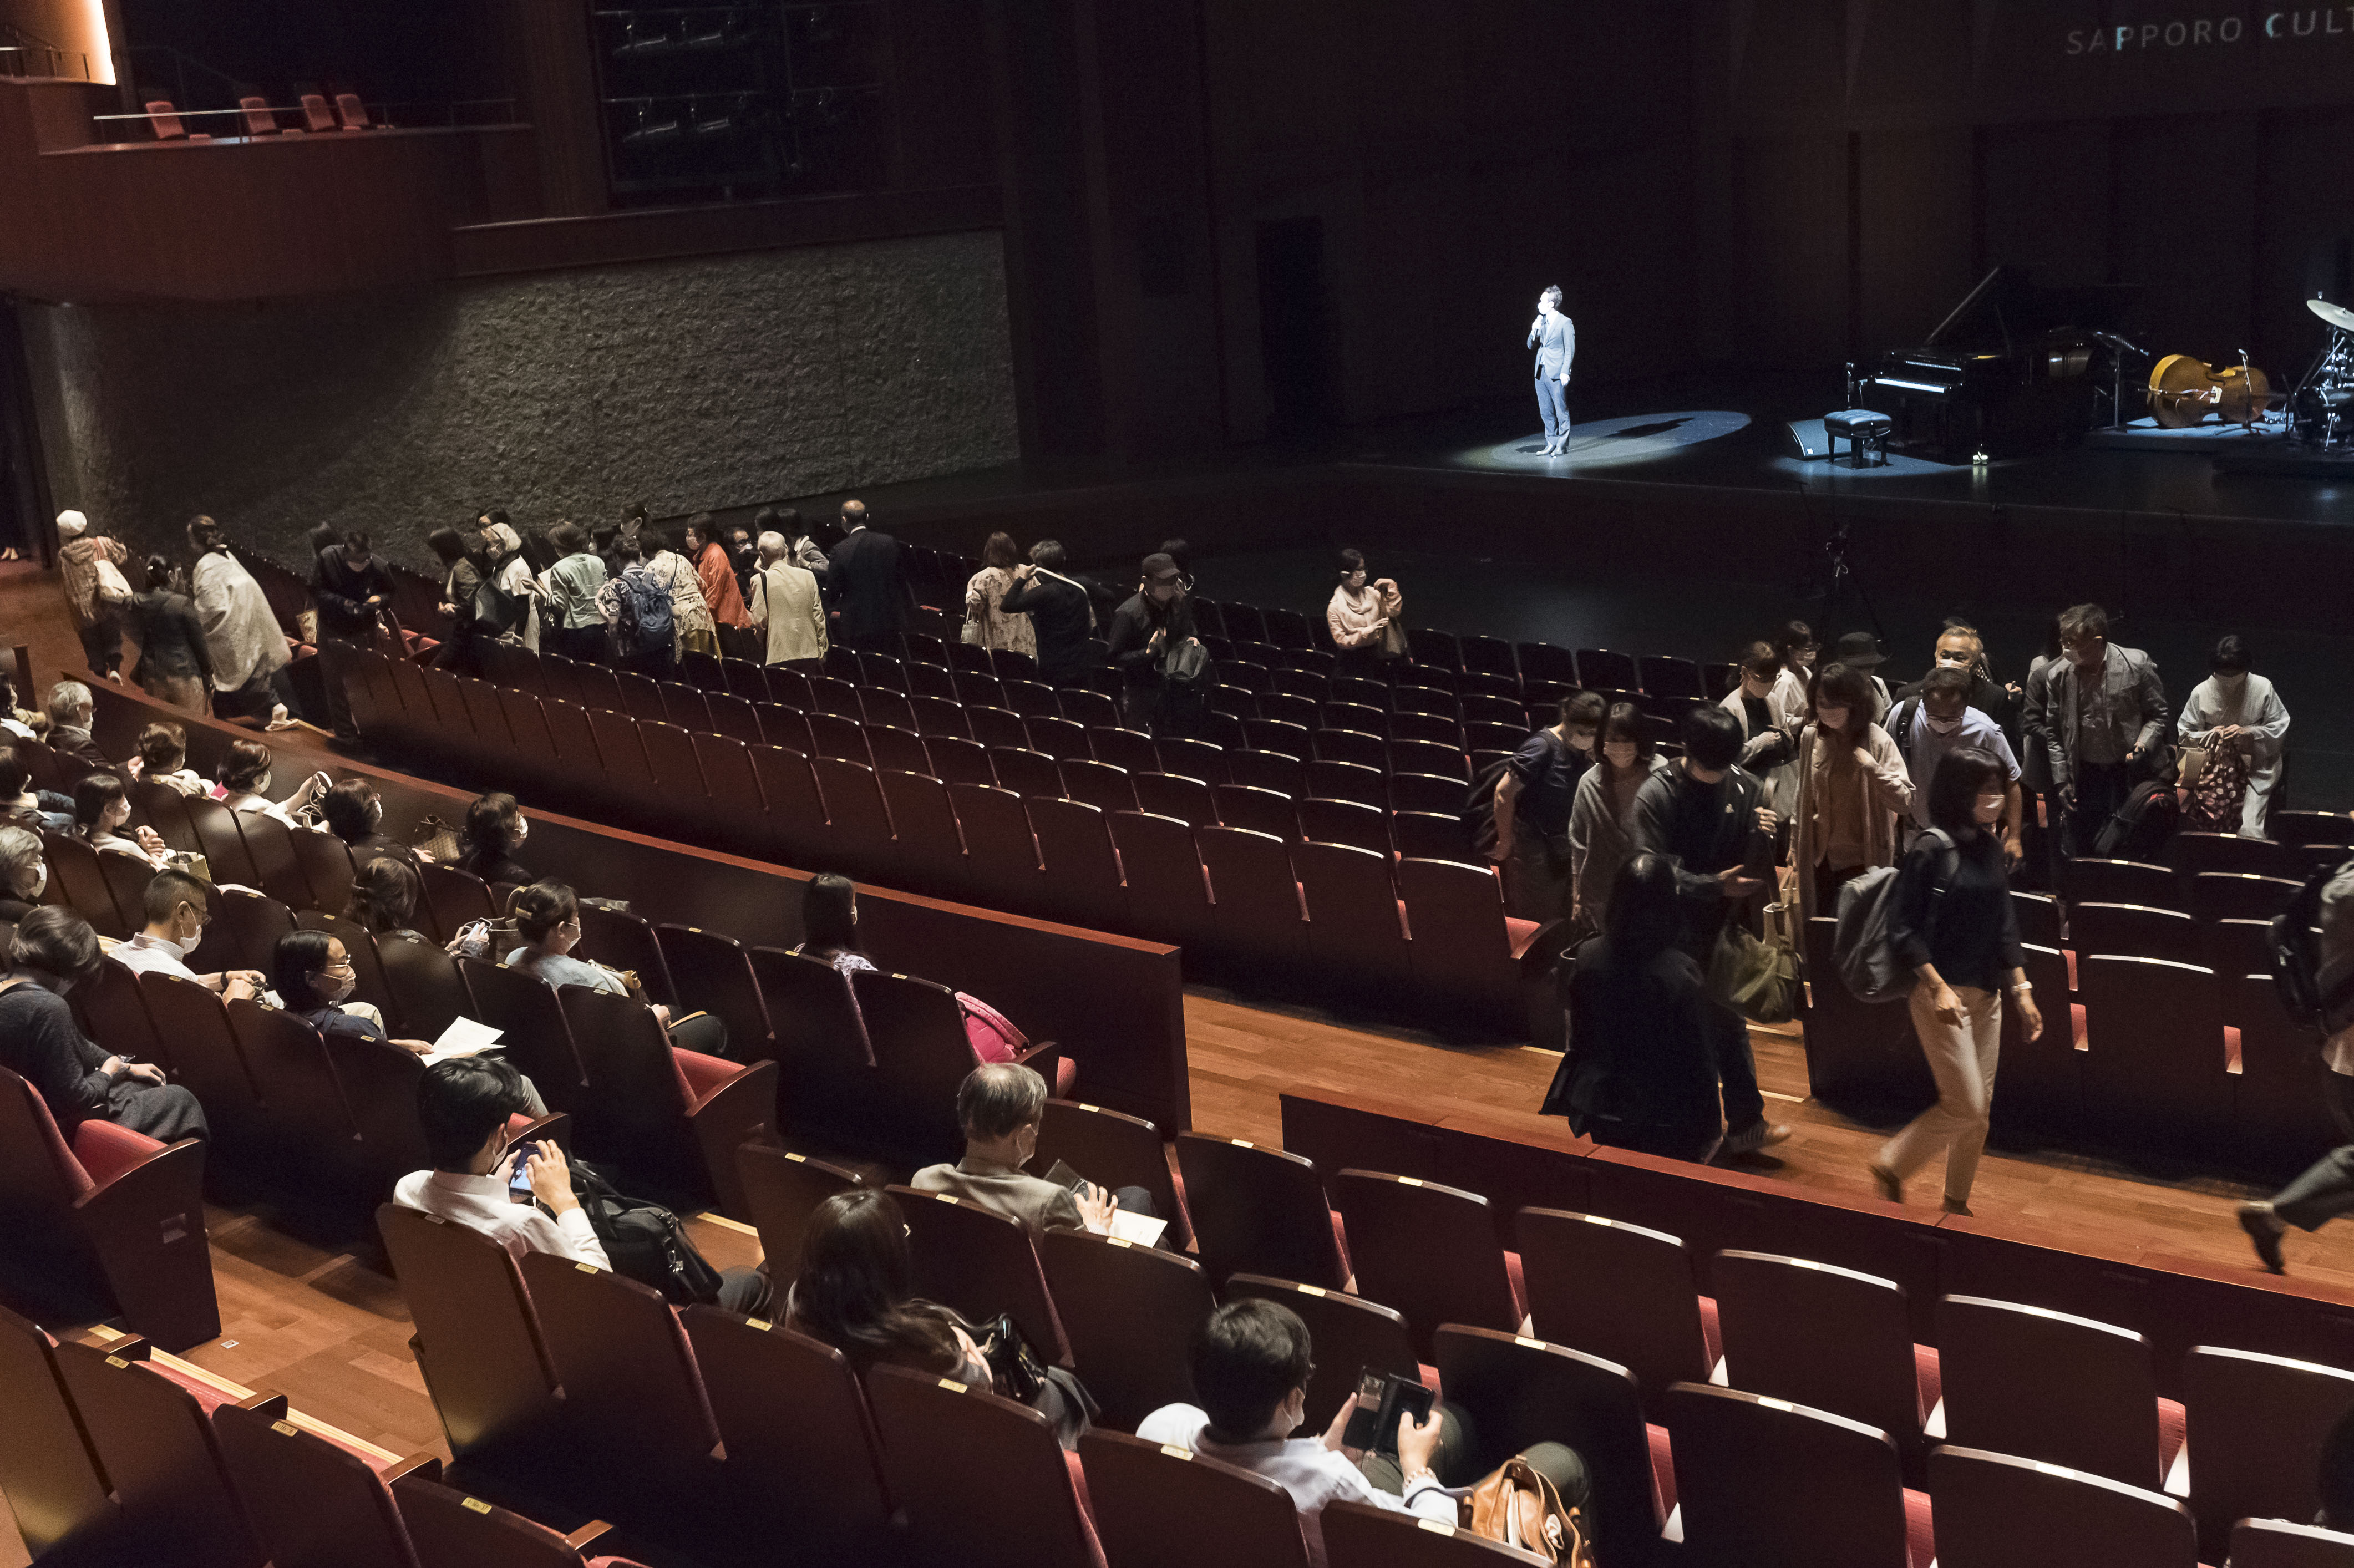 札幌文化芸術劇場 hitaru 公演再開に向けたテストコンサート「ともそう TOMORROW」を実施しましたイメージ4枚目